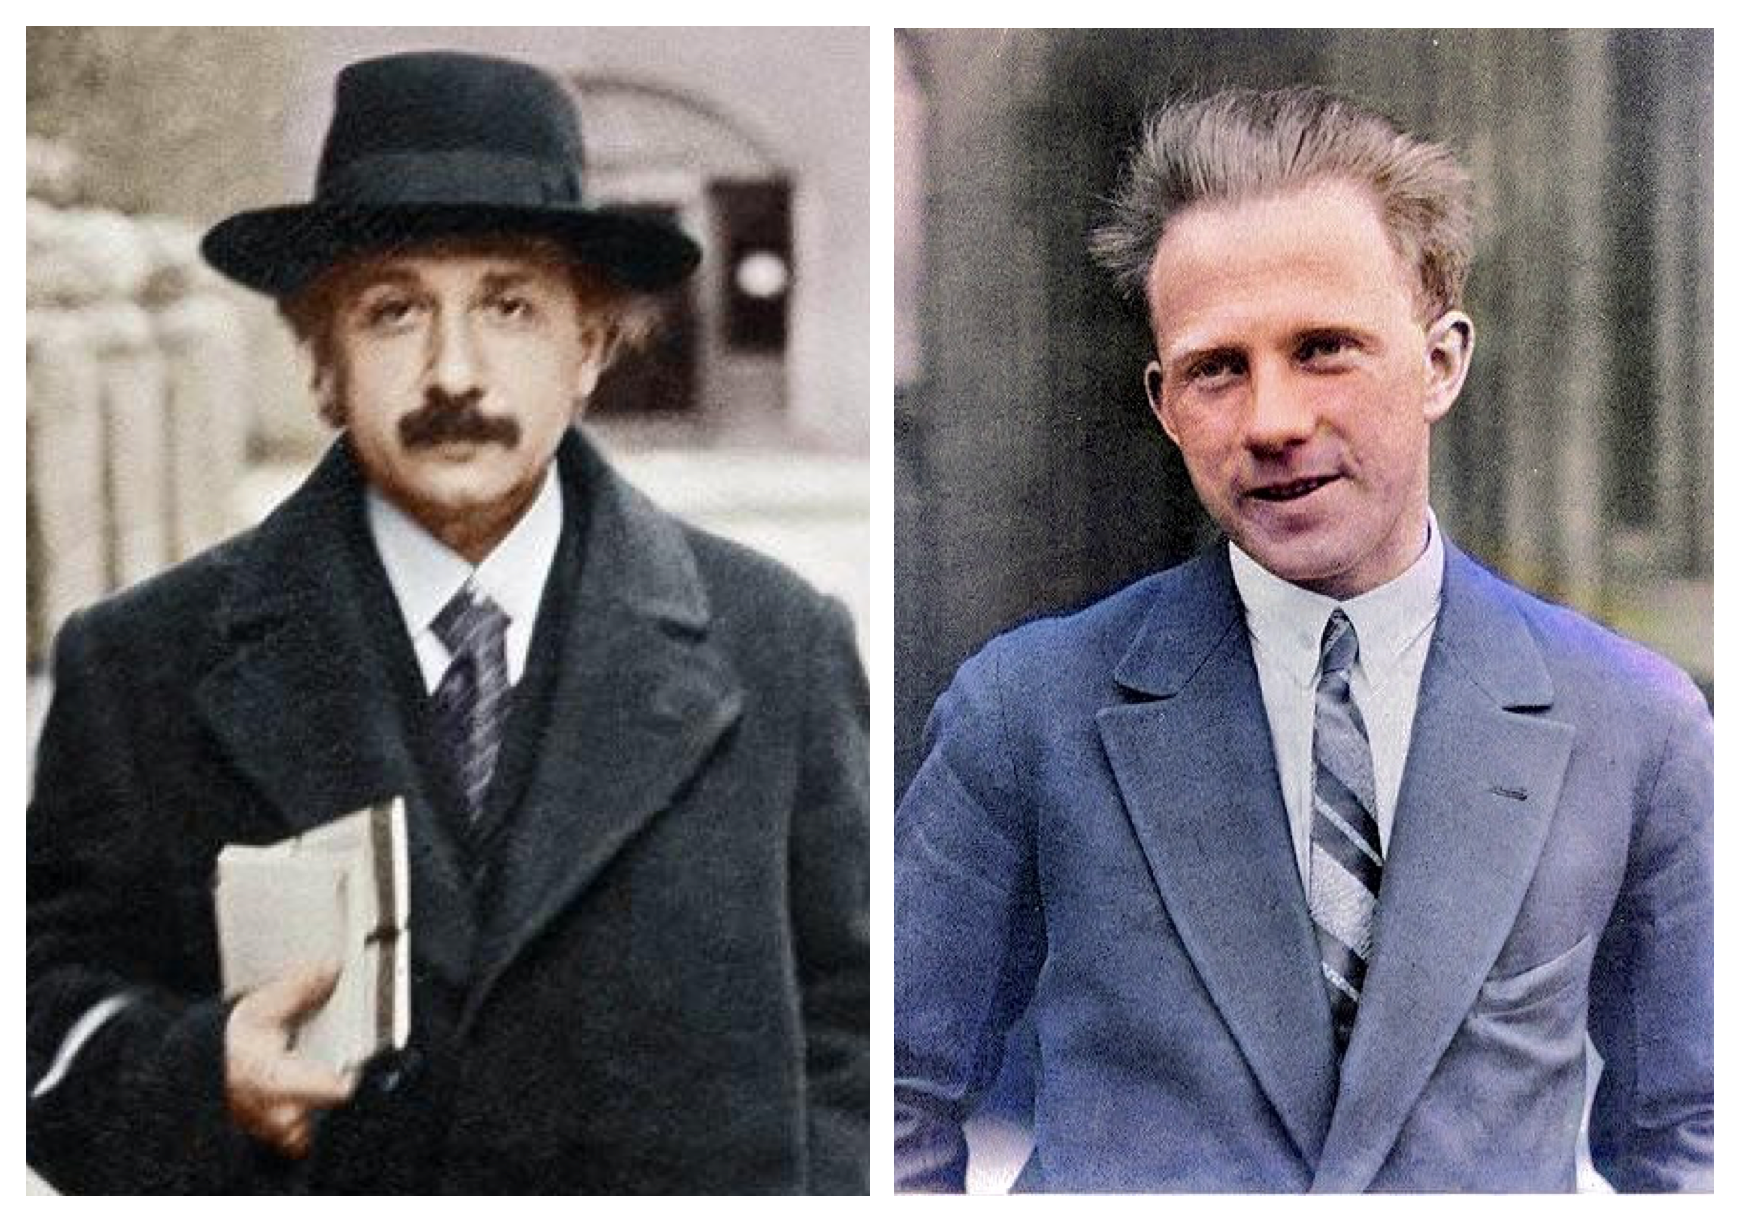 When Heisenberg met Einstein by Jørgen Veisdal